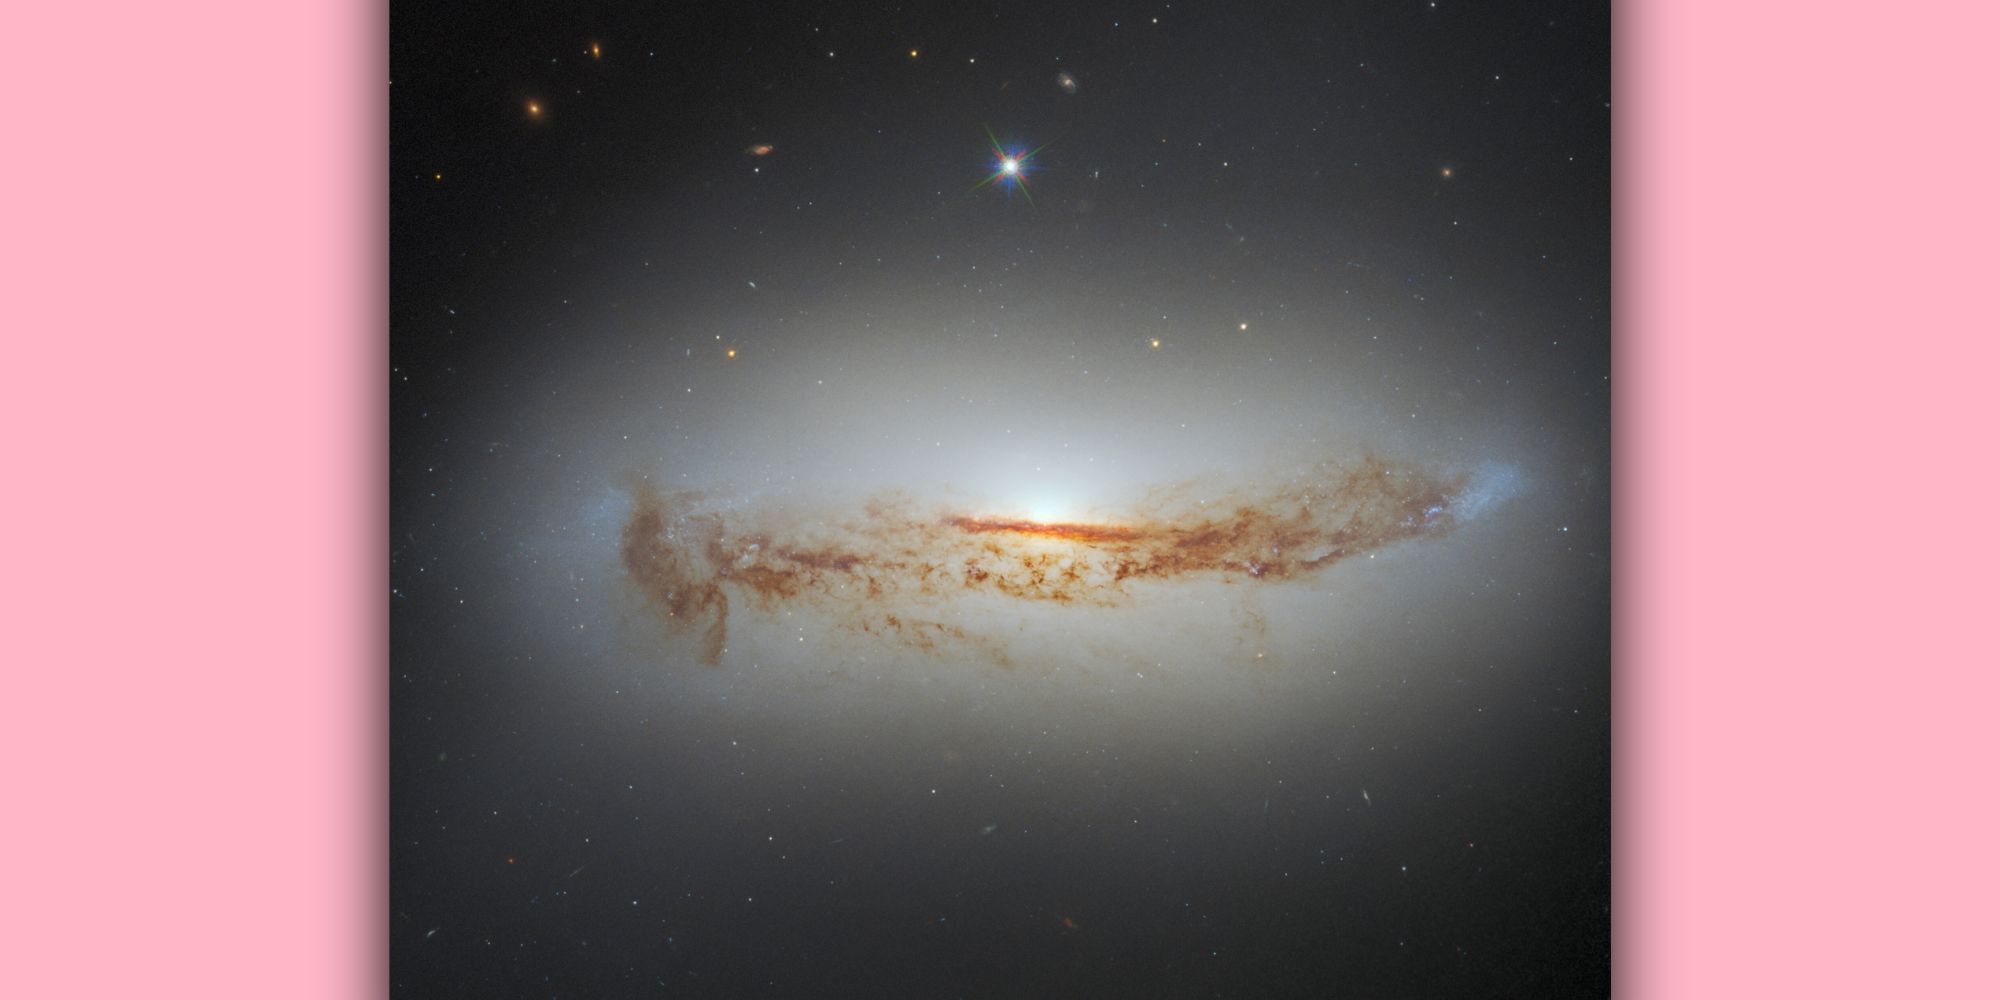 Hubble photo of galaxy NGC 7172